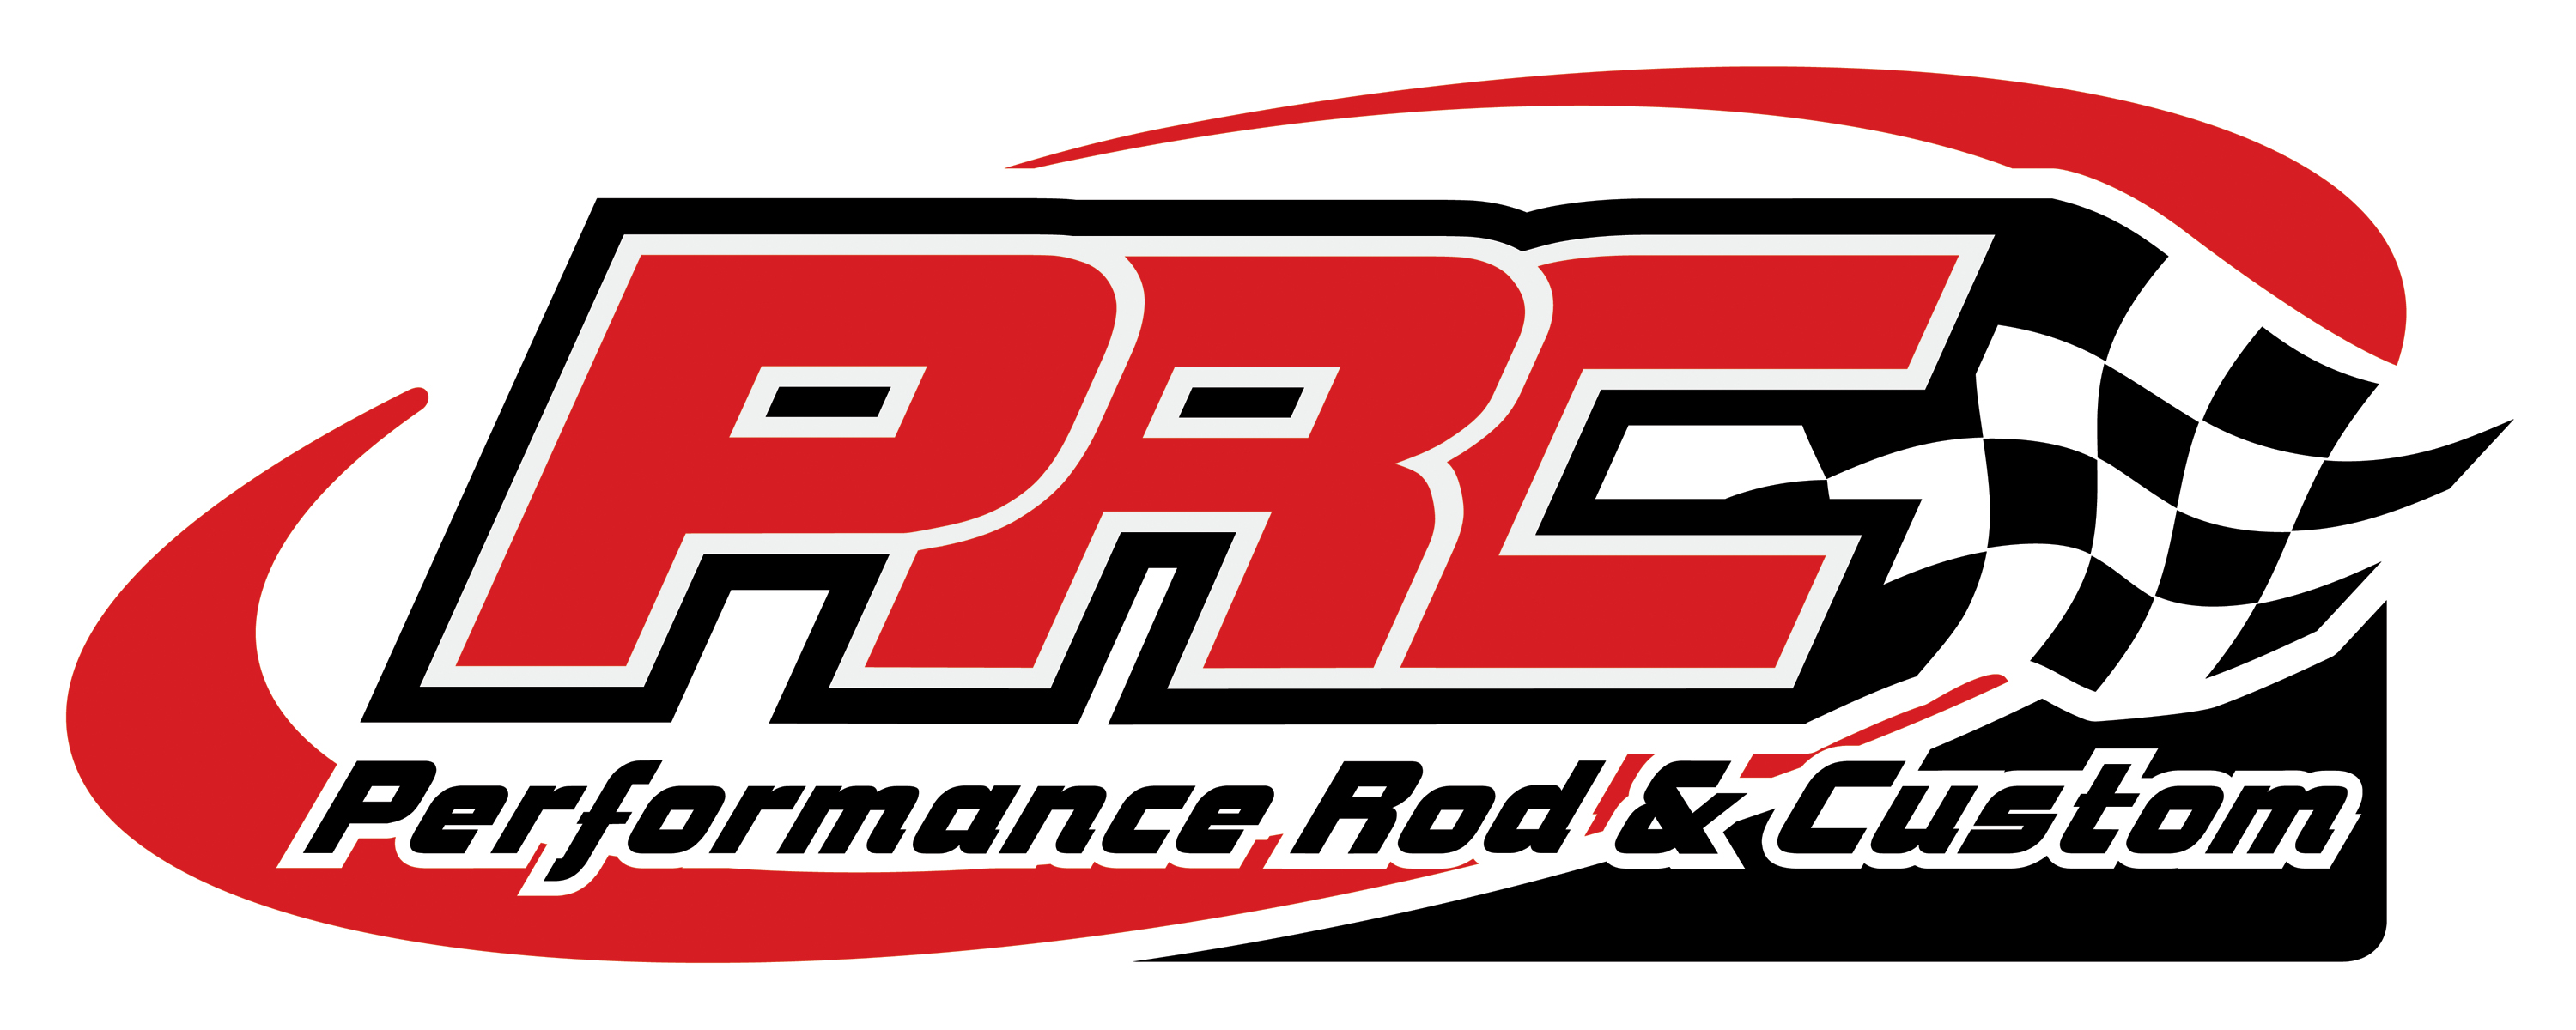 Racing Logos